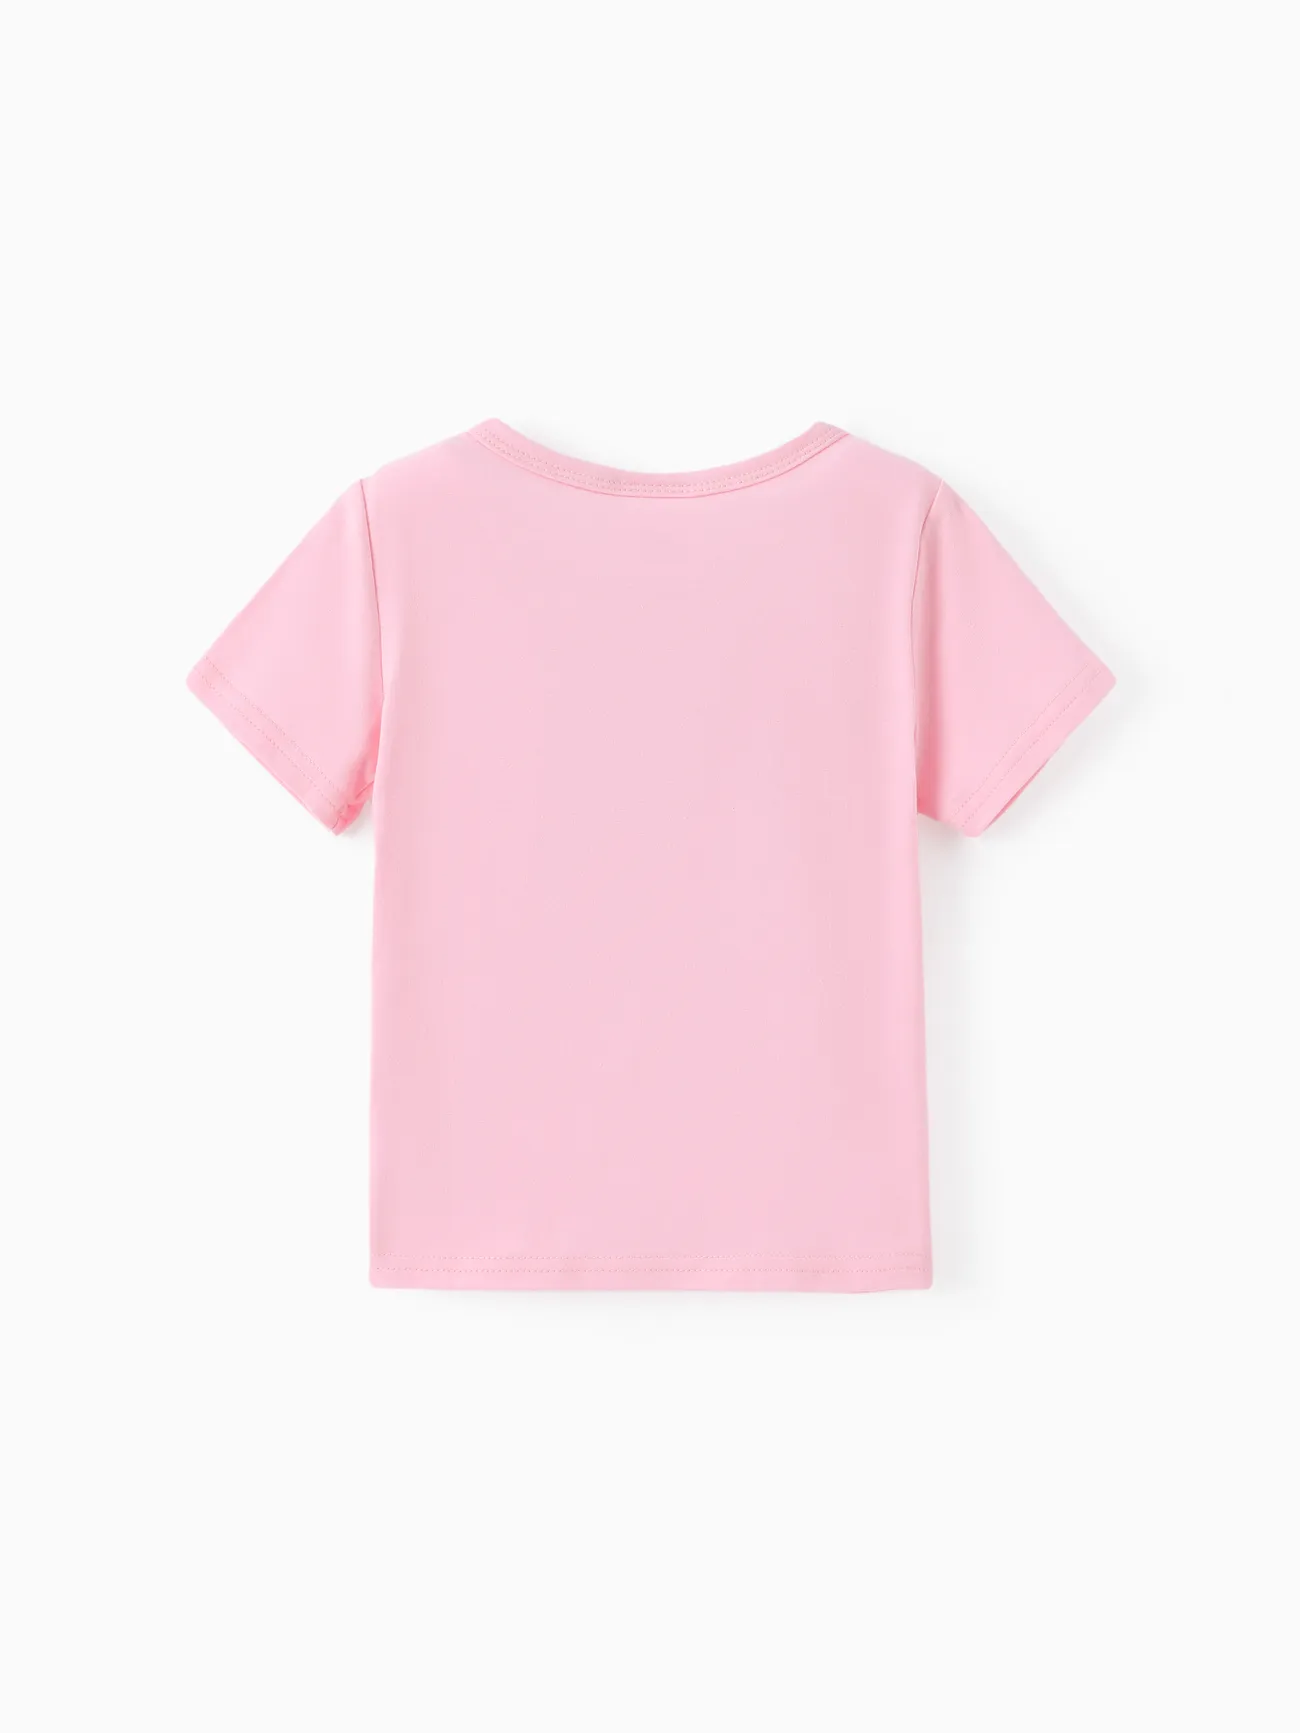 Barbie Chica Informal Camiseta Rosa claro big image 1